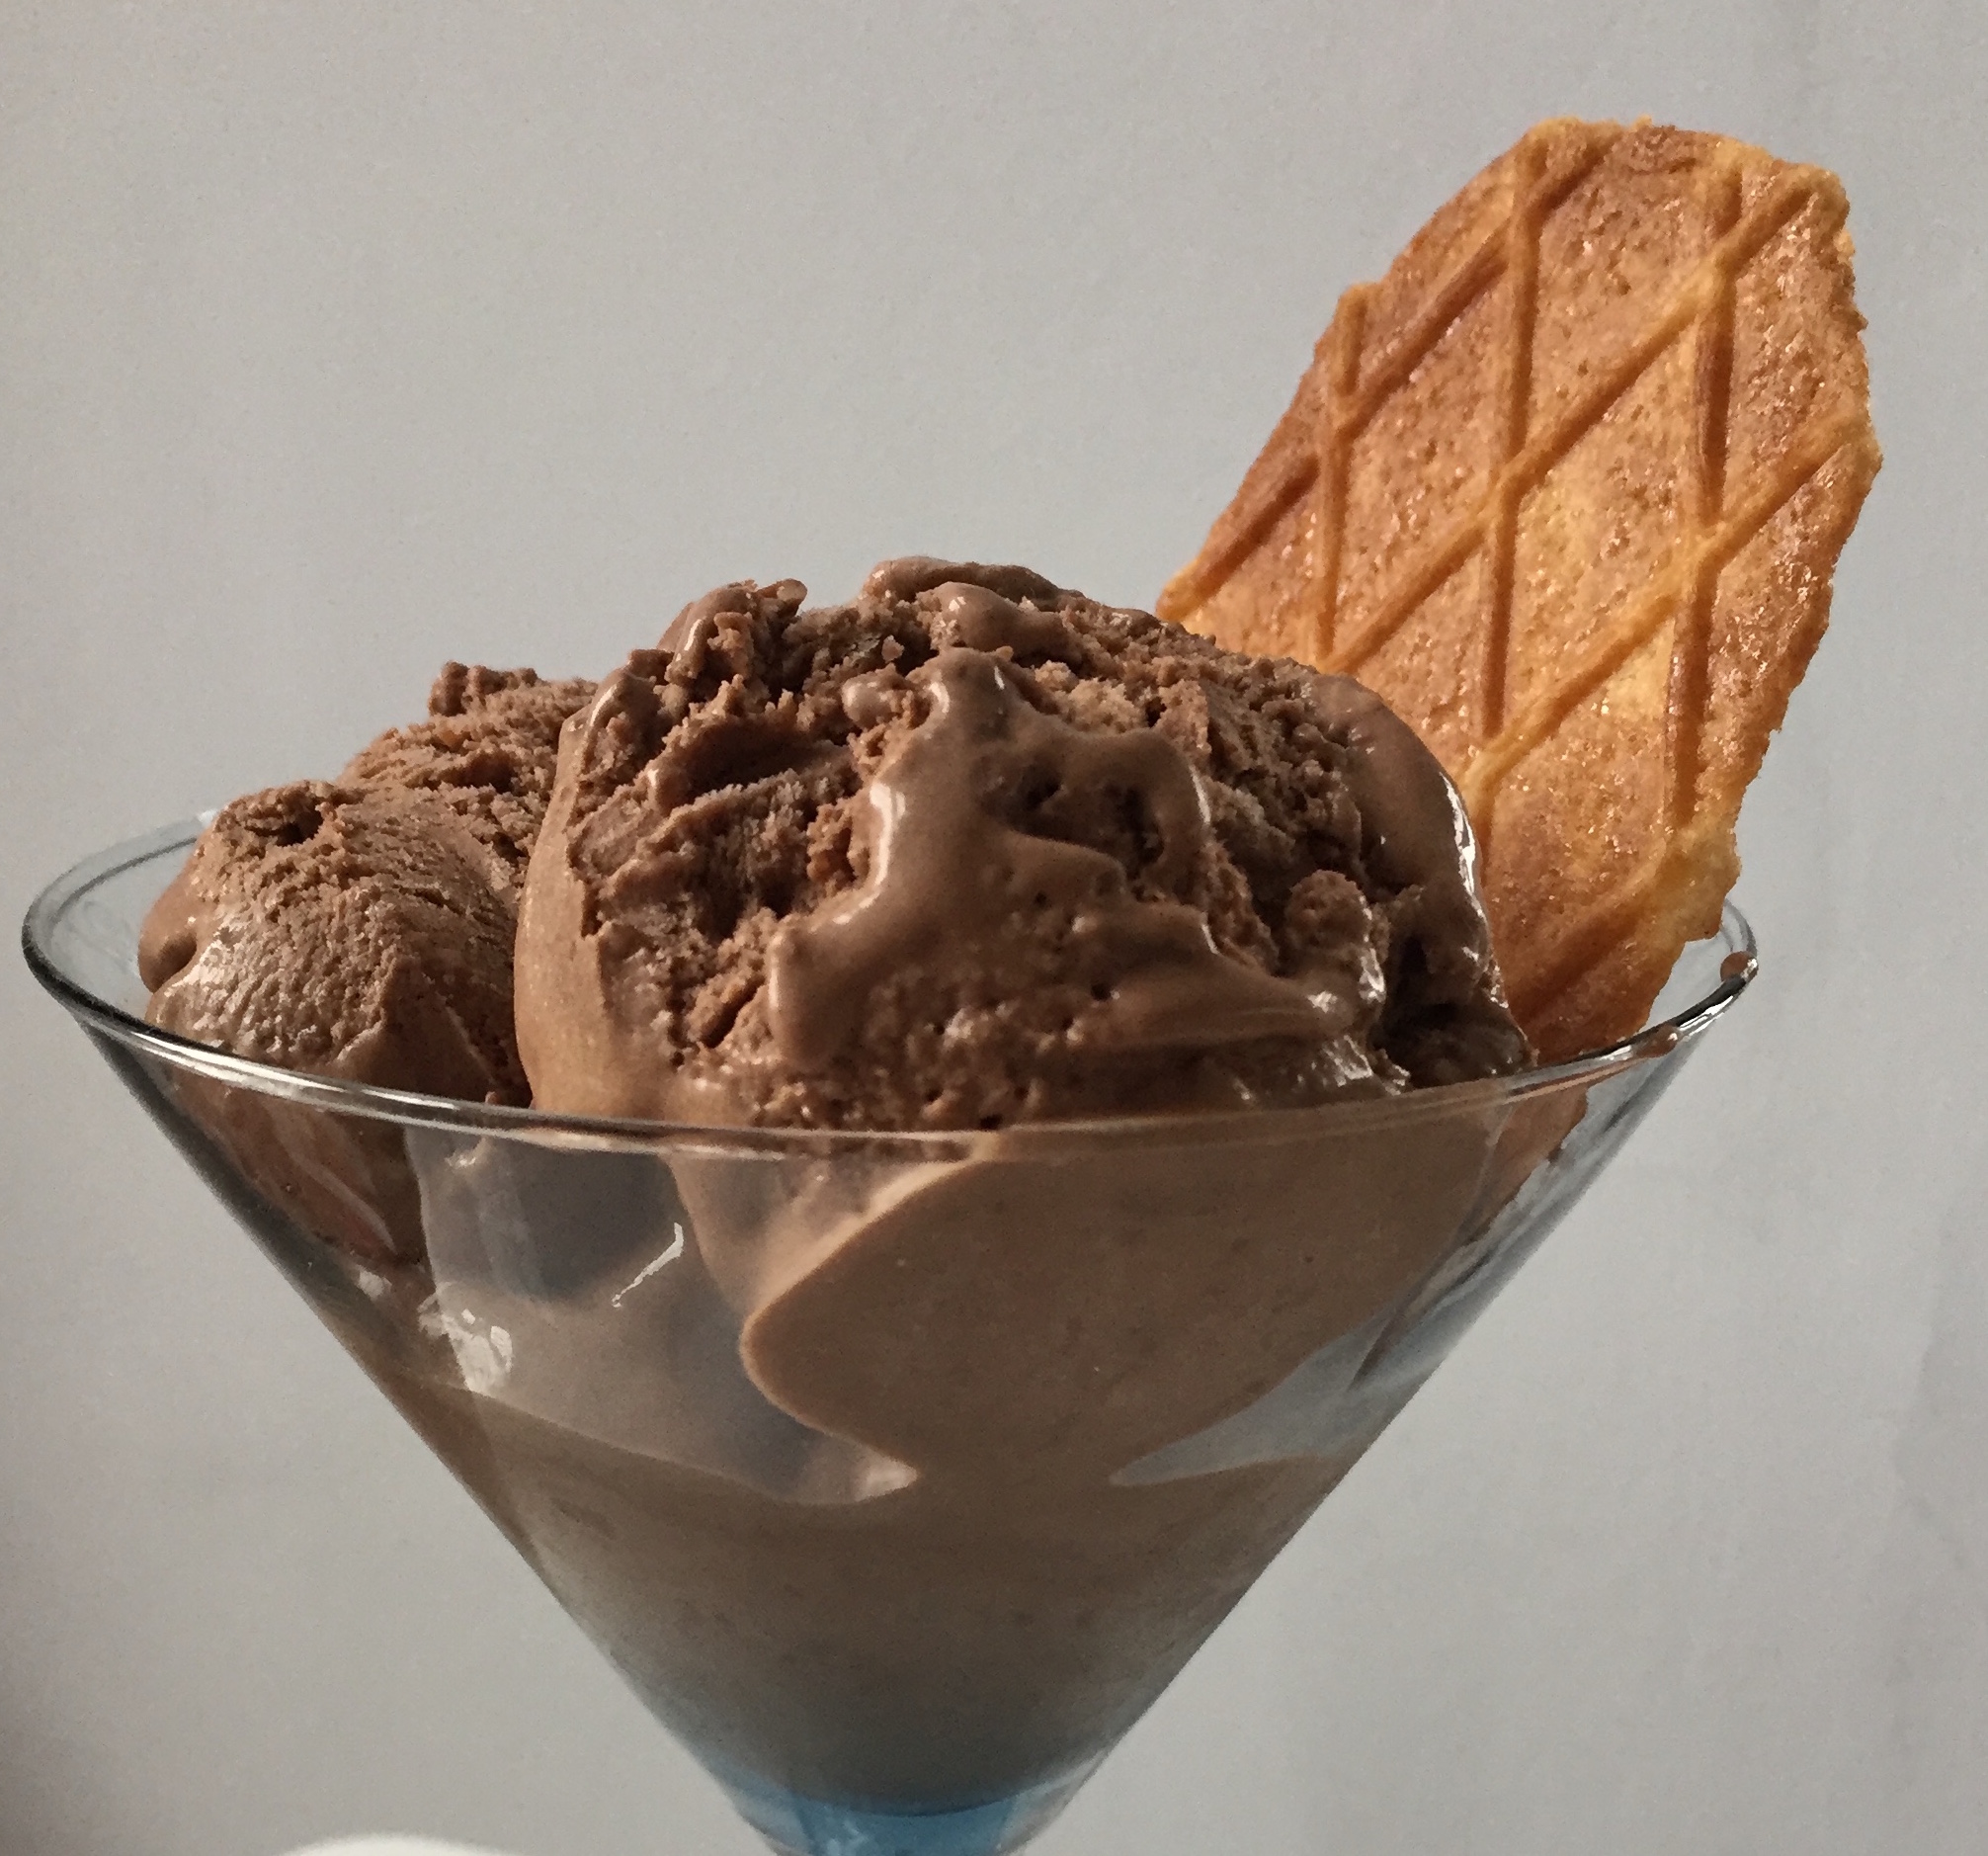 Choco ice. Айс Чоко, шоколадное мороженое. Мороженое пломбир в шоколаде. Коричневое мороженое. Мороженое шоколадное в стаканчике.